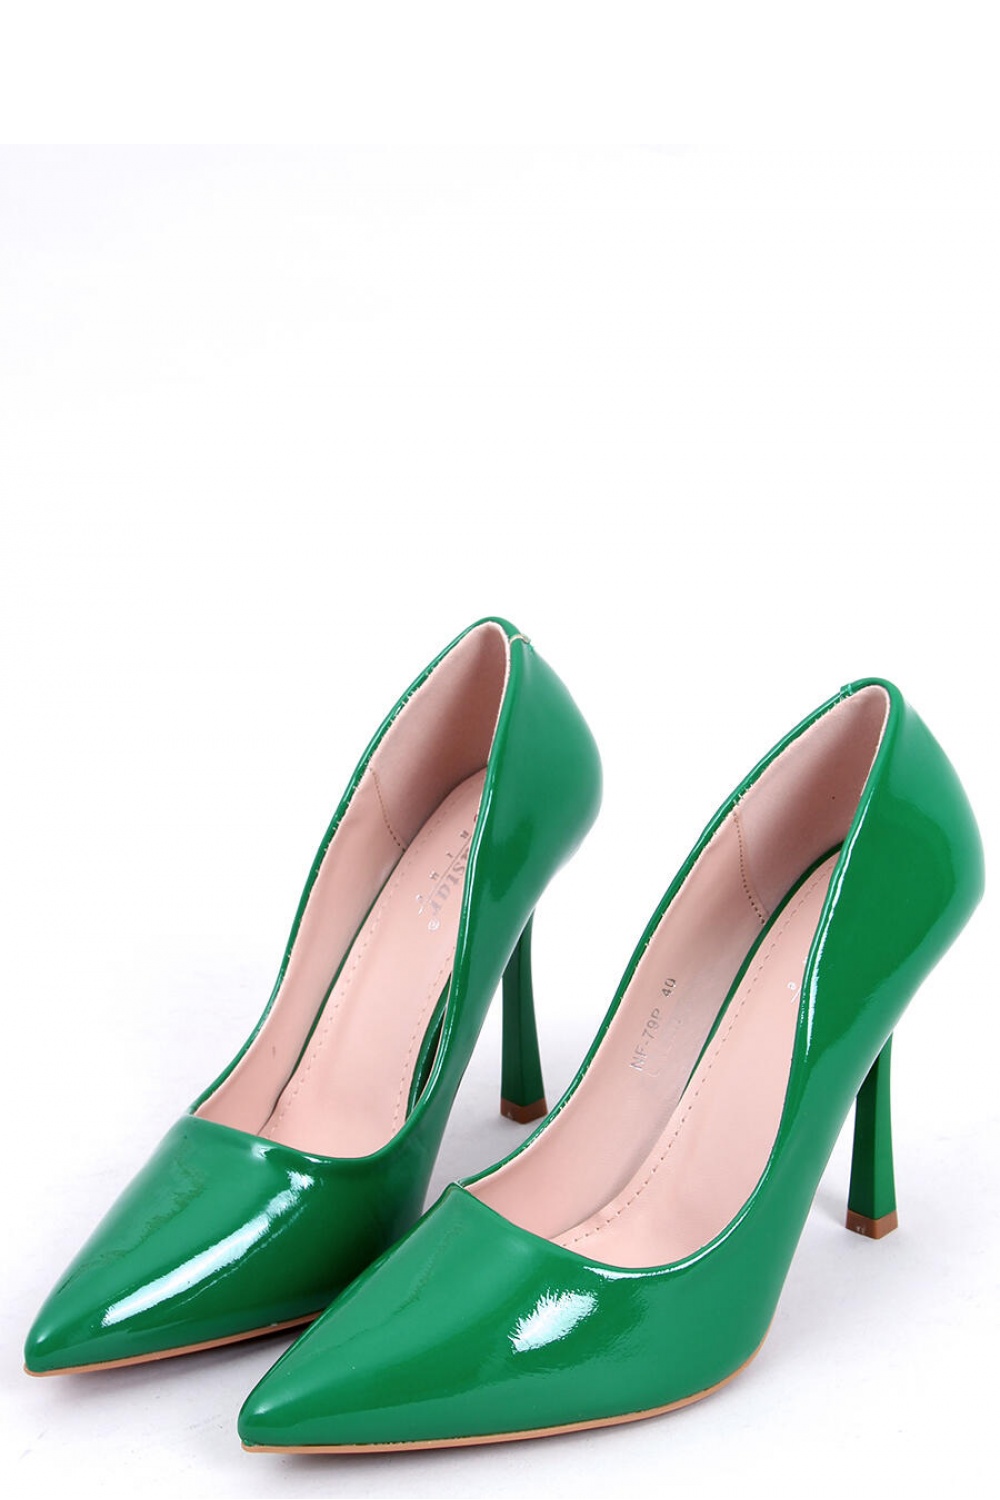 High heels model 172821 Inello